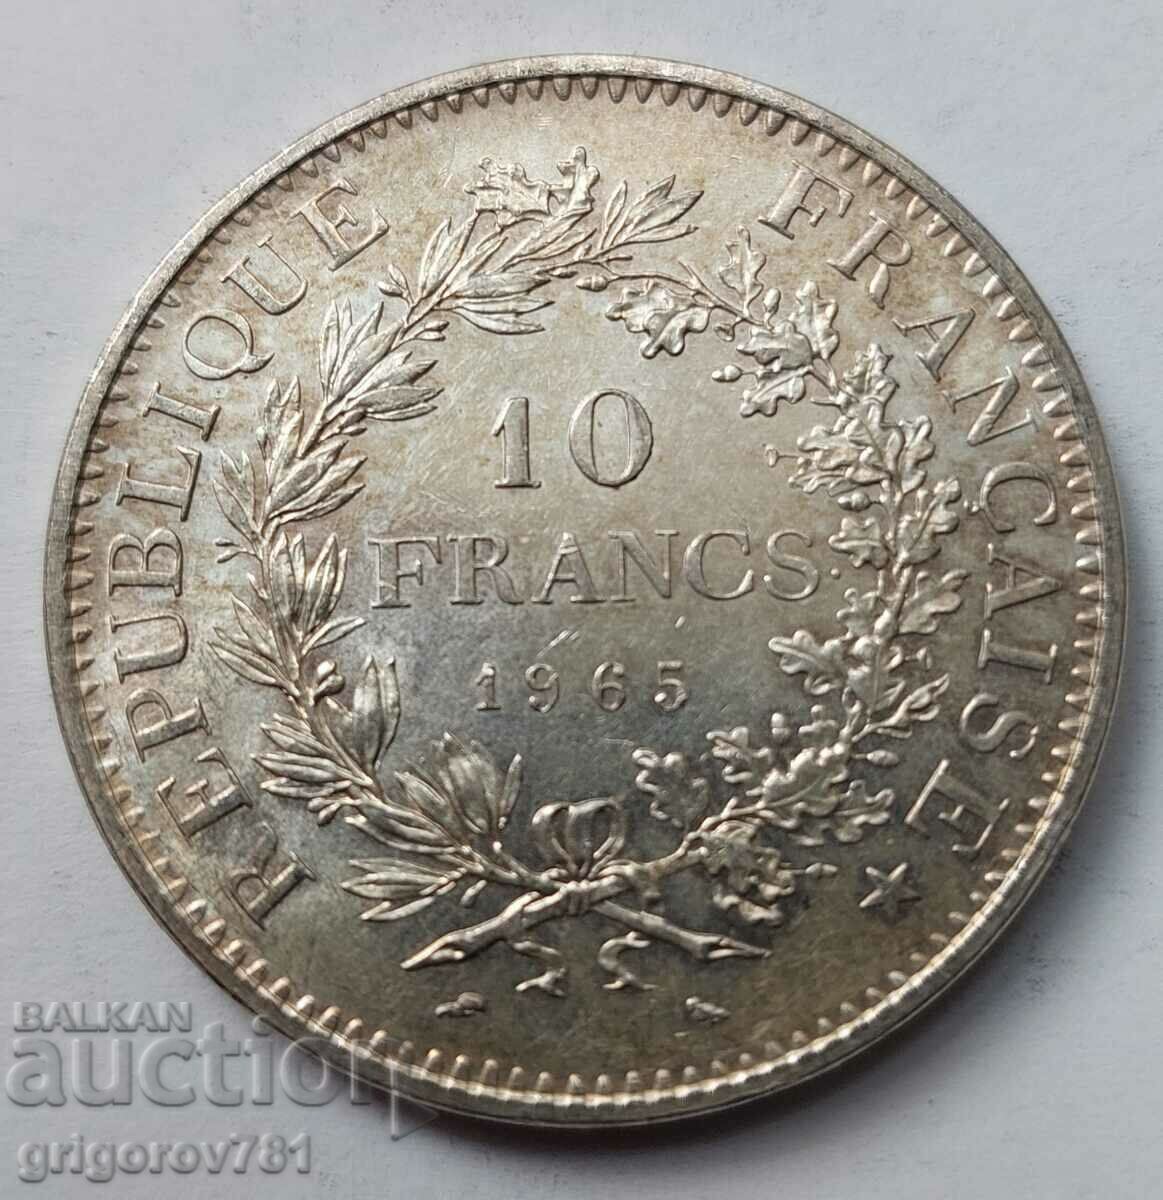 10 Franci Argint Franta 1965 - Moneda de argint #50